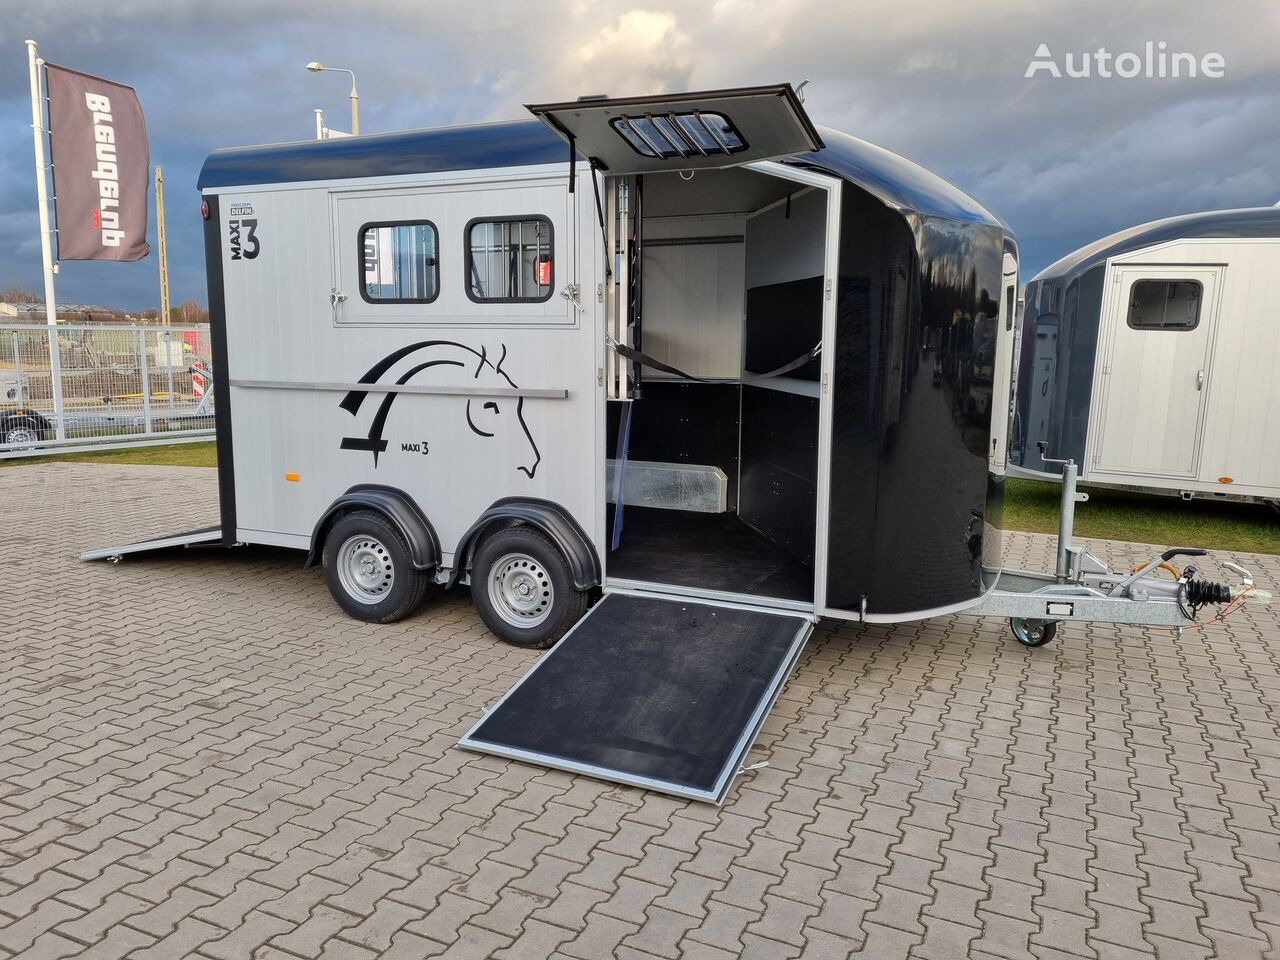 신규 말 트레일러 Cheval Liberté Maxi 3 Minimax trailer for 3 horses GVW 3500kg tack room saddle : 사진 32